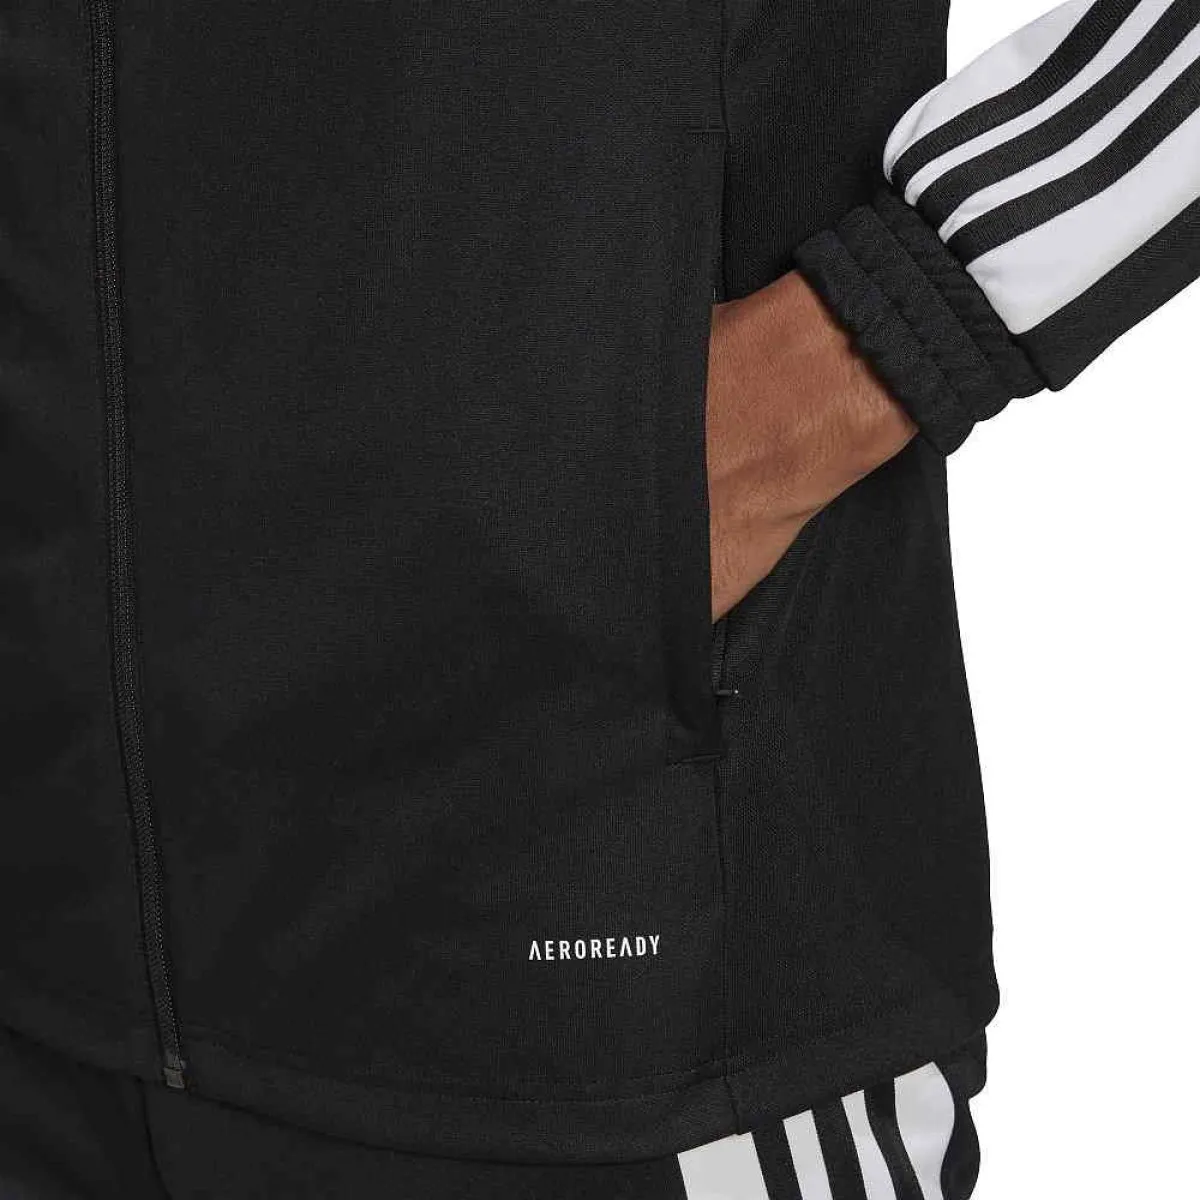 adidas Squadra 21 training jacket black/white